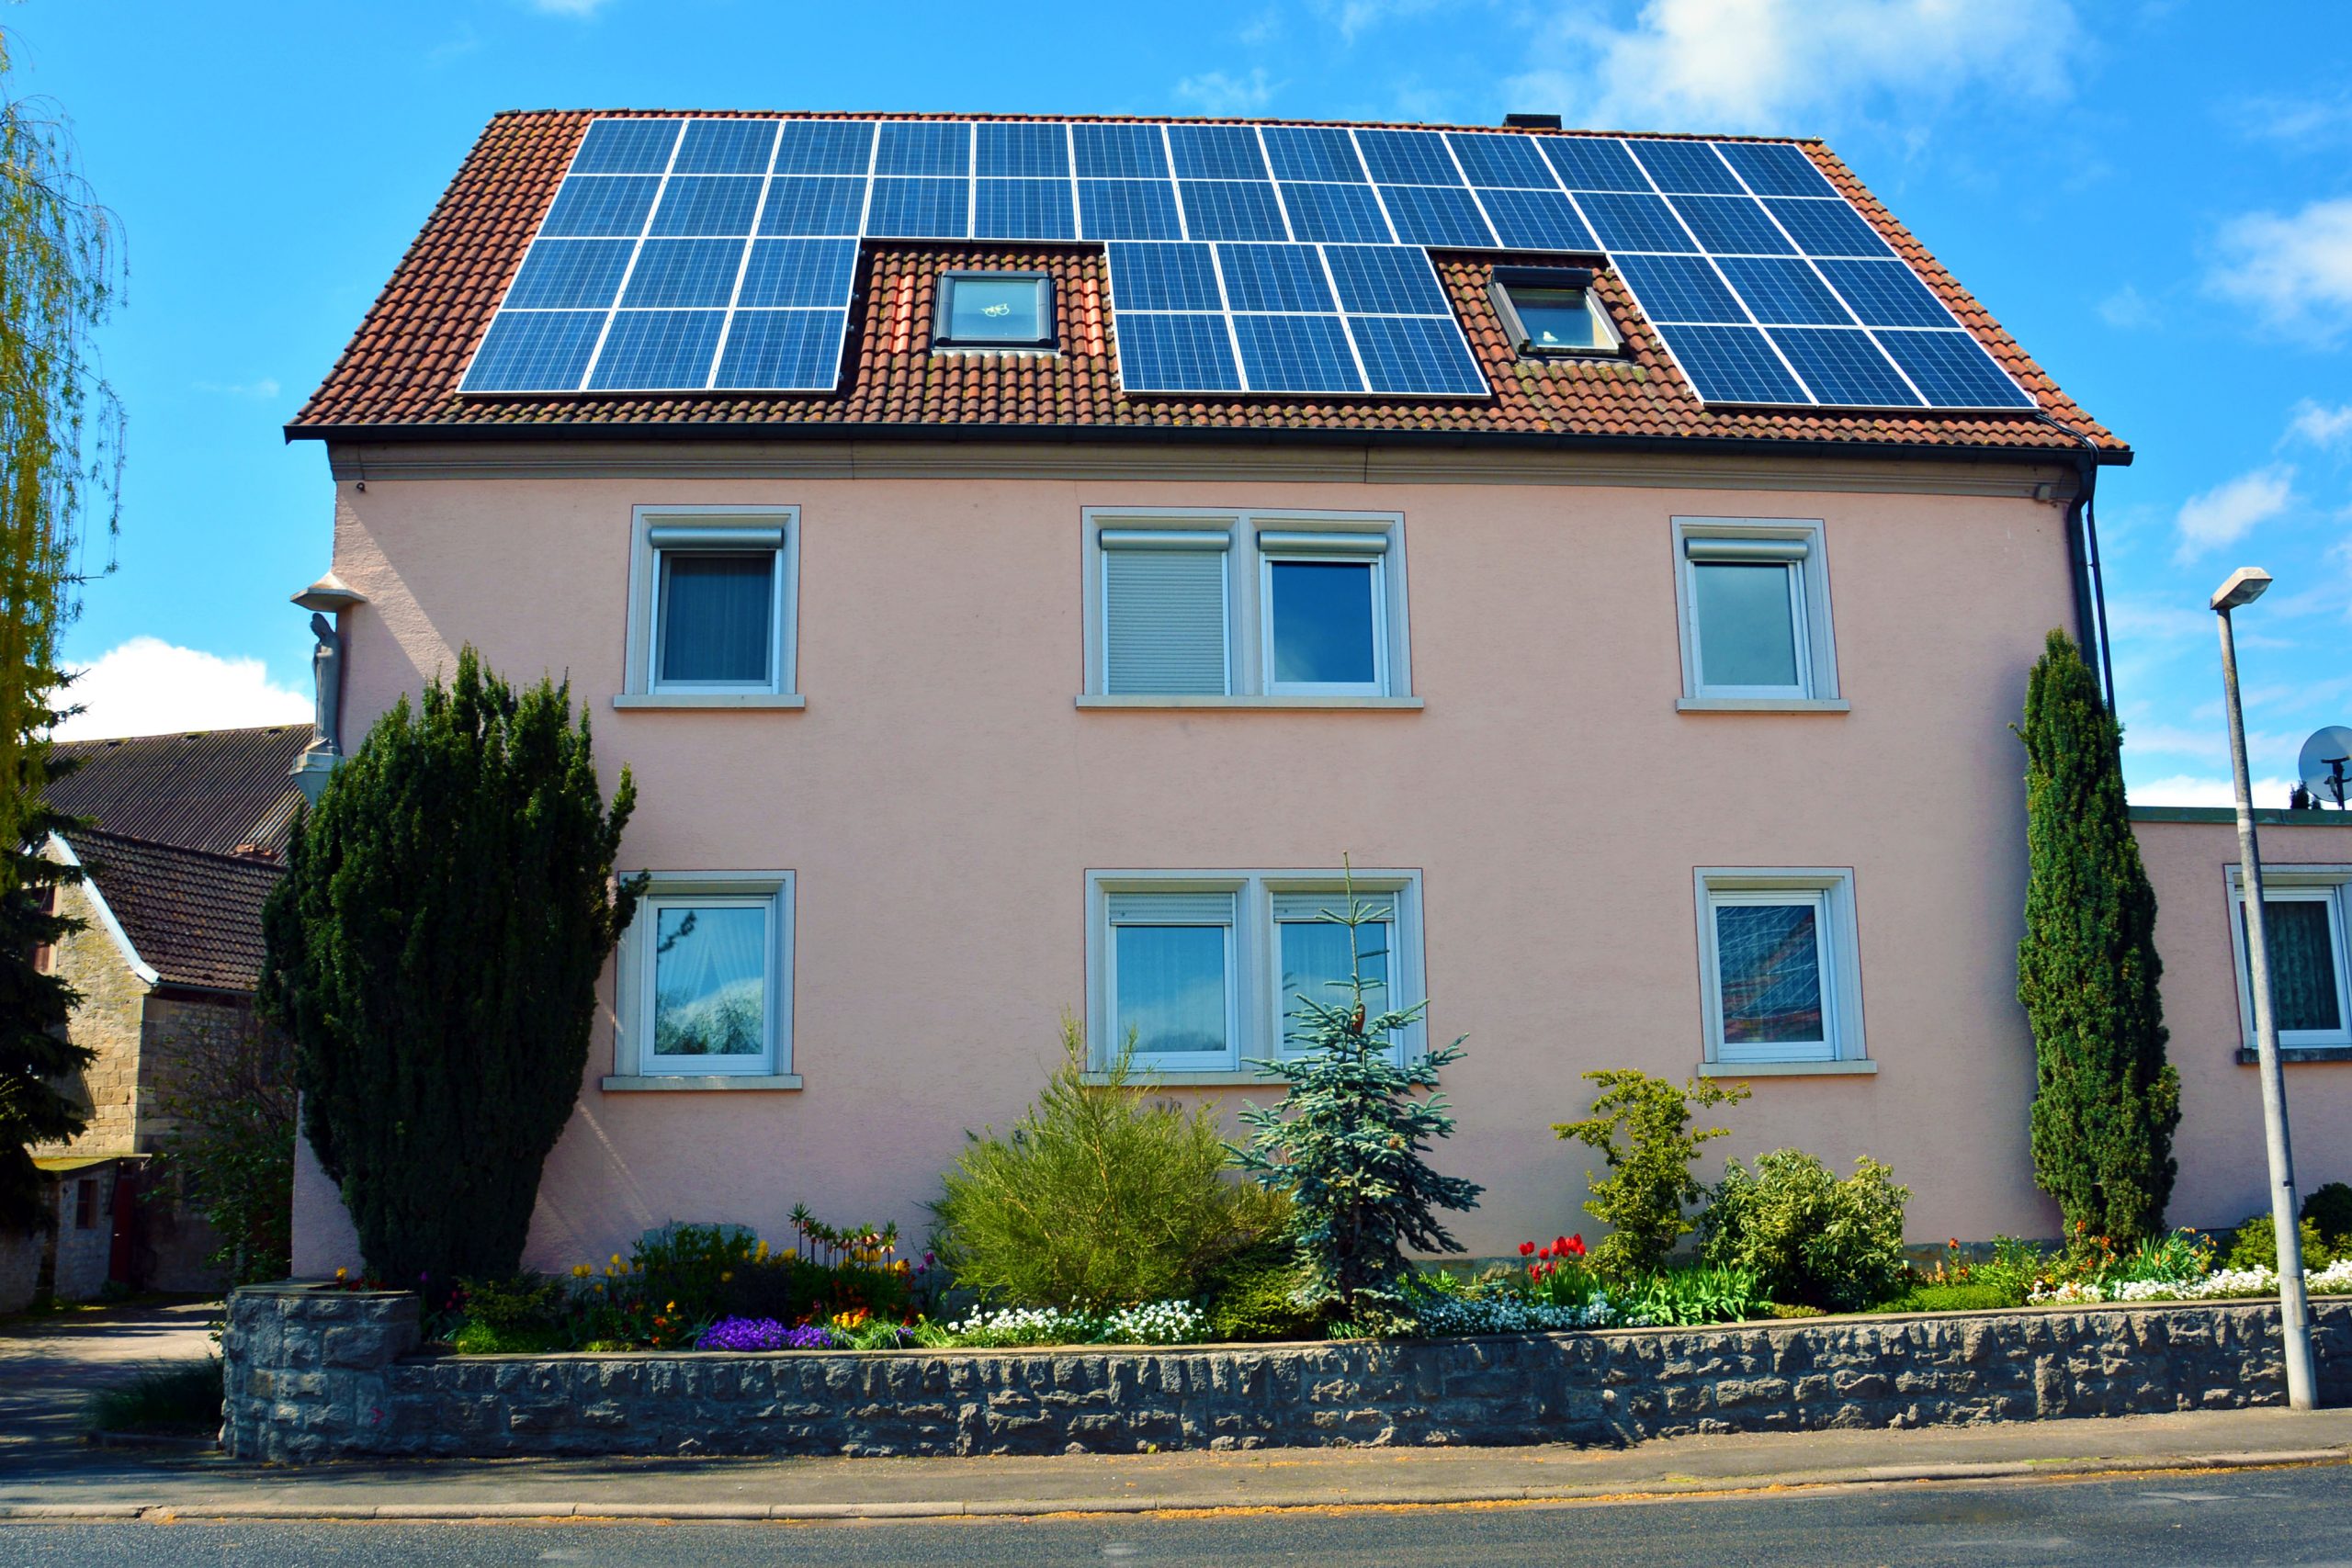 EU-Kommission genehmigt höhere Vergütungssätze für Photovoltaik